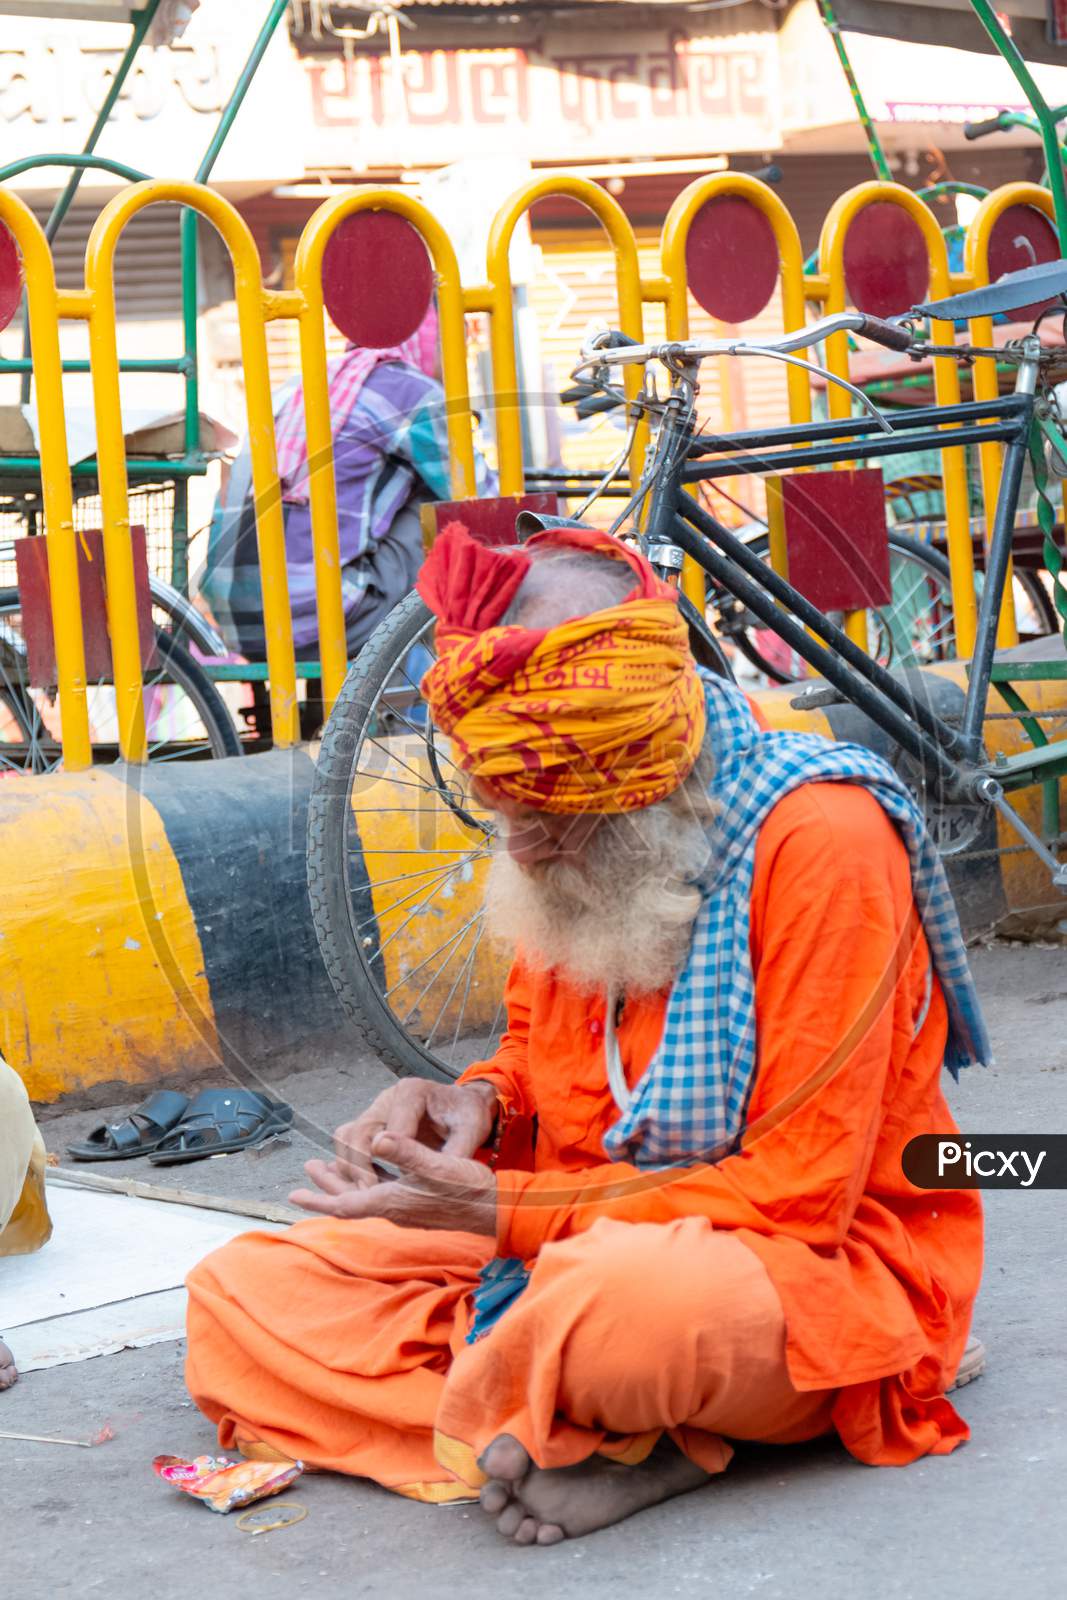 Portrait of Indian Monk in Varanasi